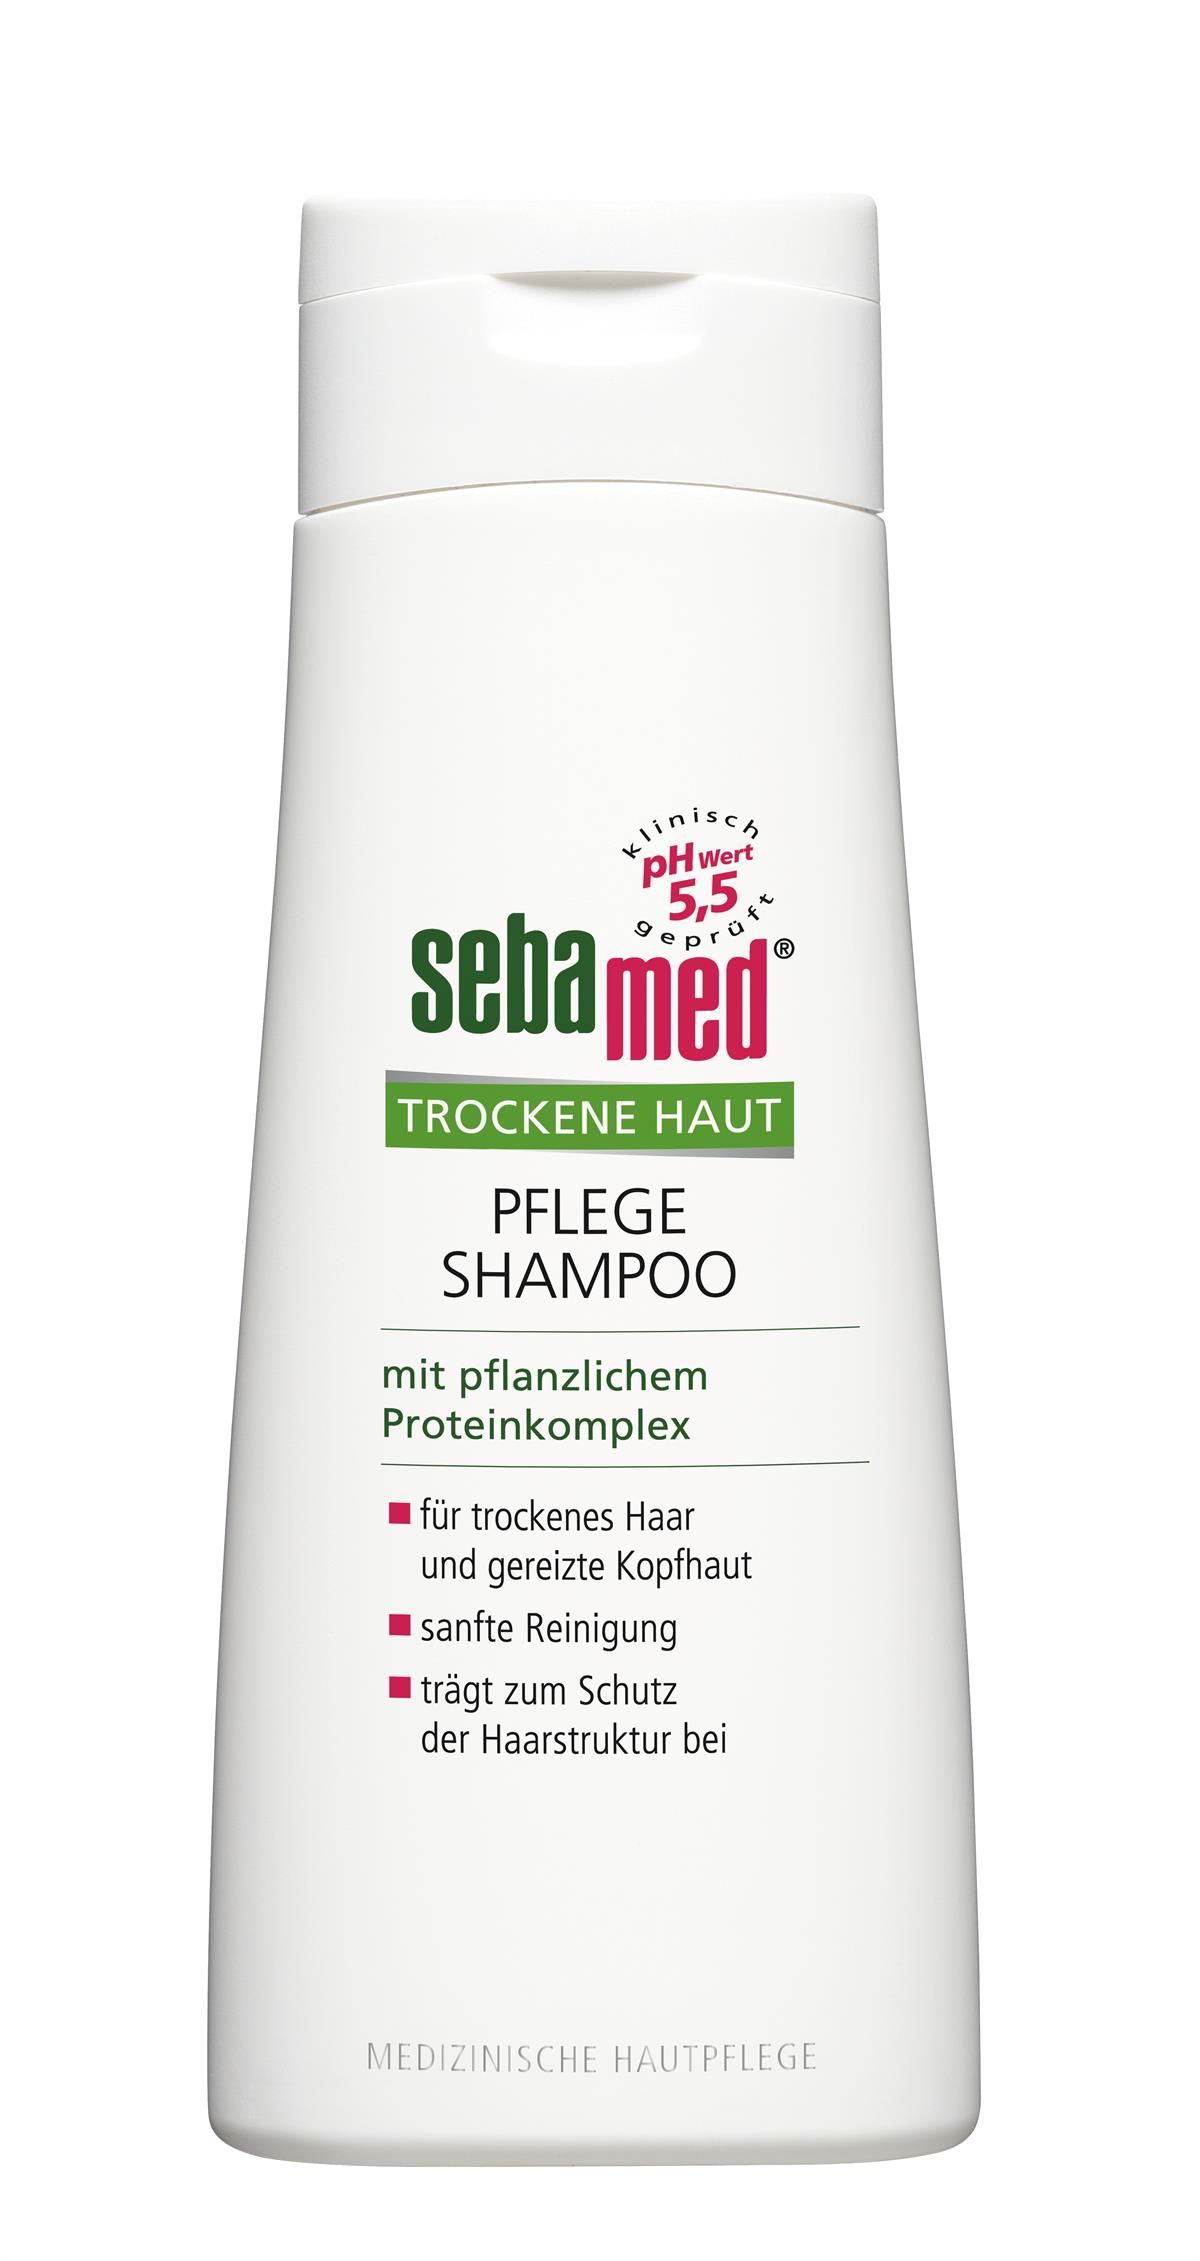 sebamed Trockene Haut Pflege Shampoo 200 ml, UVP: 5,05 €